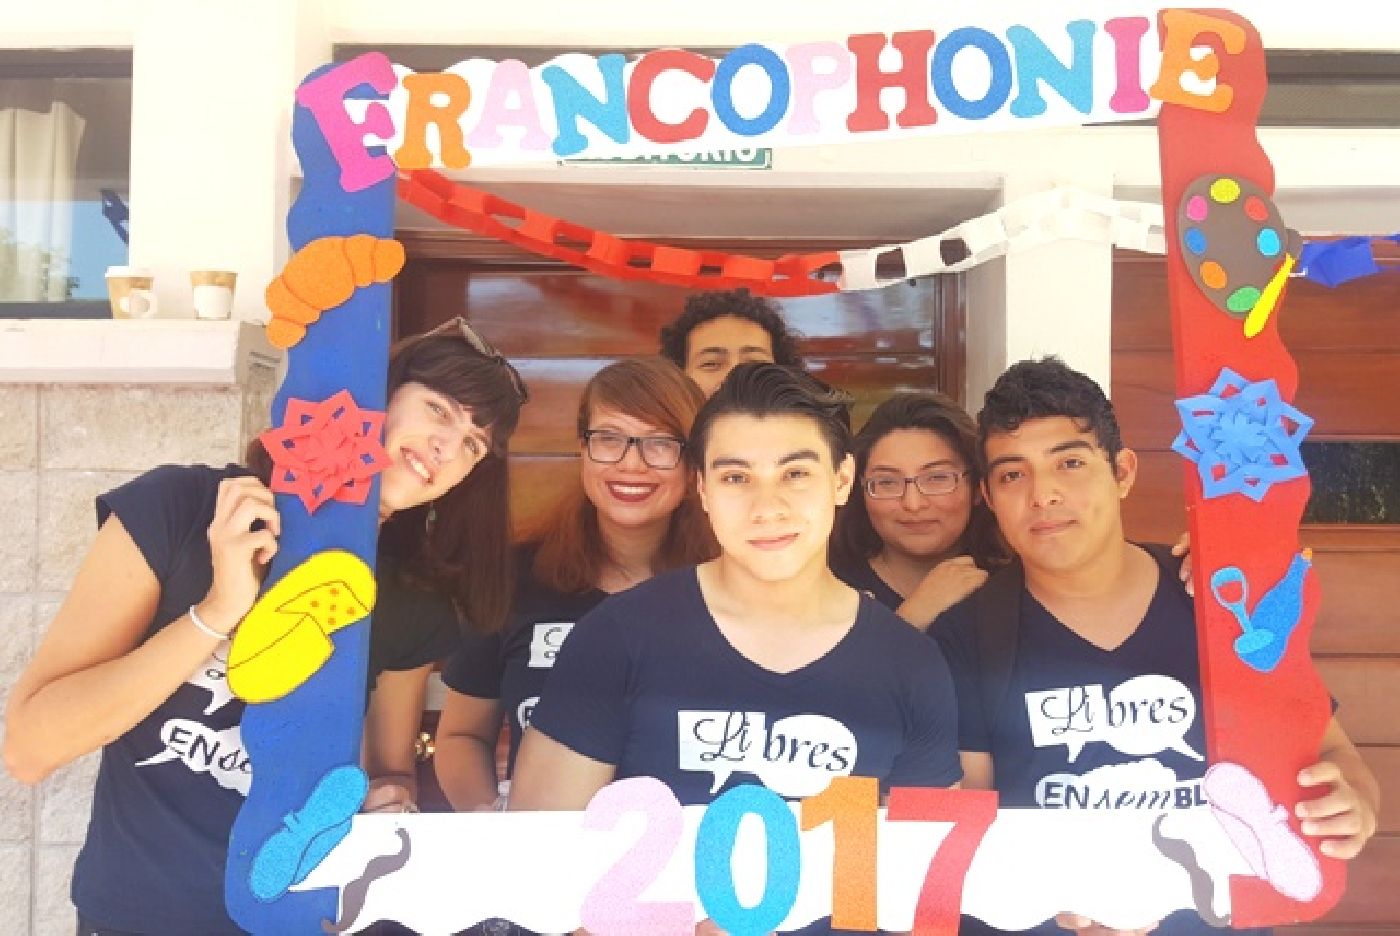 UQRoo se une a festejos de la Jornada Internacional de la Francofonía 2017 